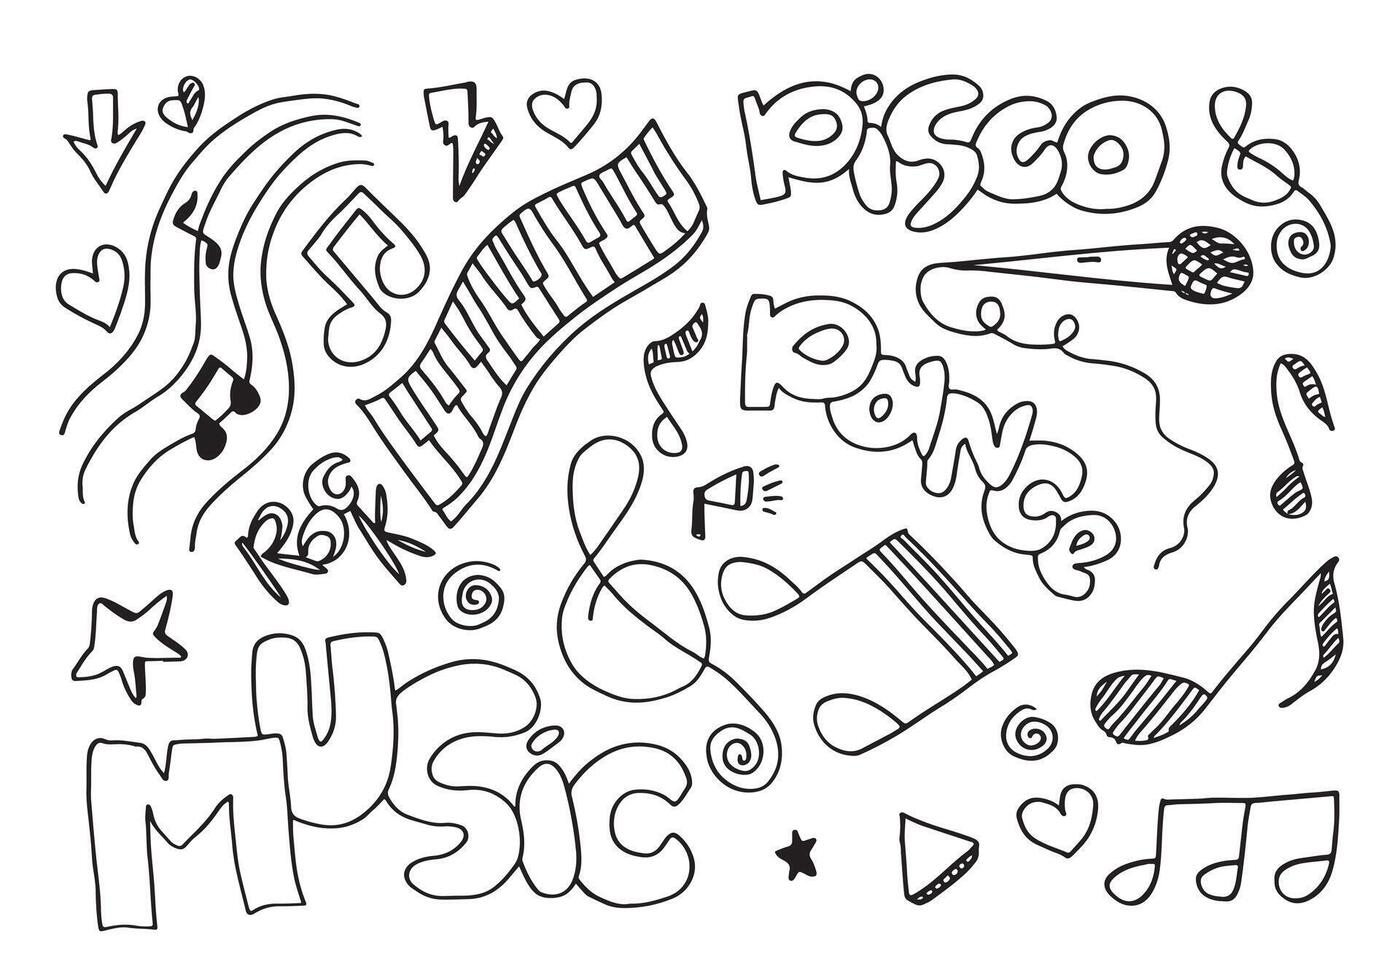 muziek achtergrond hand getekende muziek set illustratie. illustraties van muziekbeelden, ontwerpconcept. vector